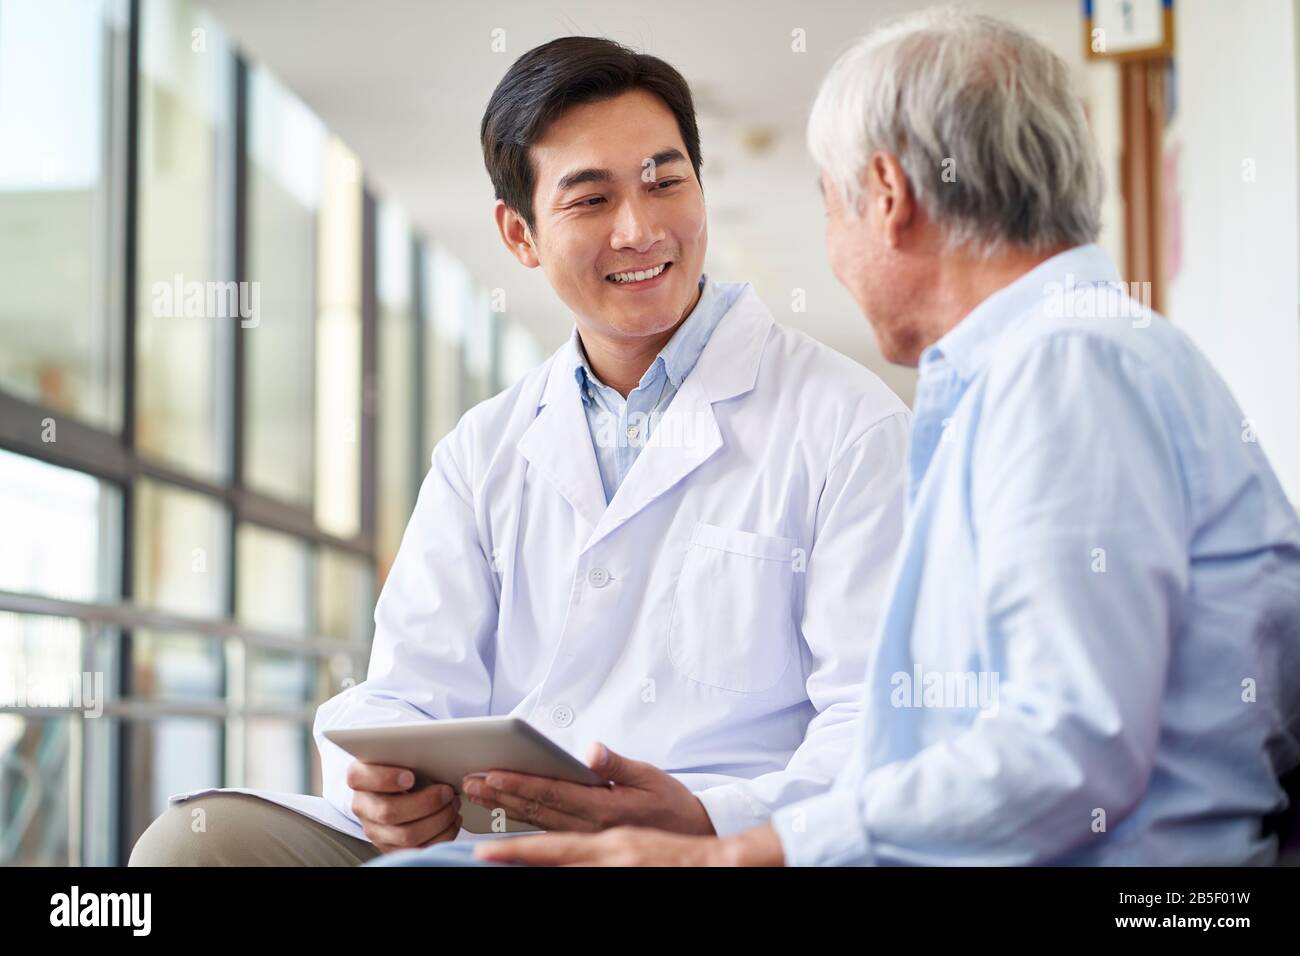 amable y sonriente joven médico asiático hablando y explicando el resultado de la prueba a un paciente mayor en el hospital Foto de stock